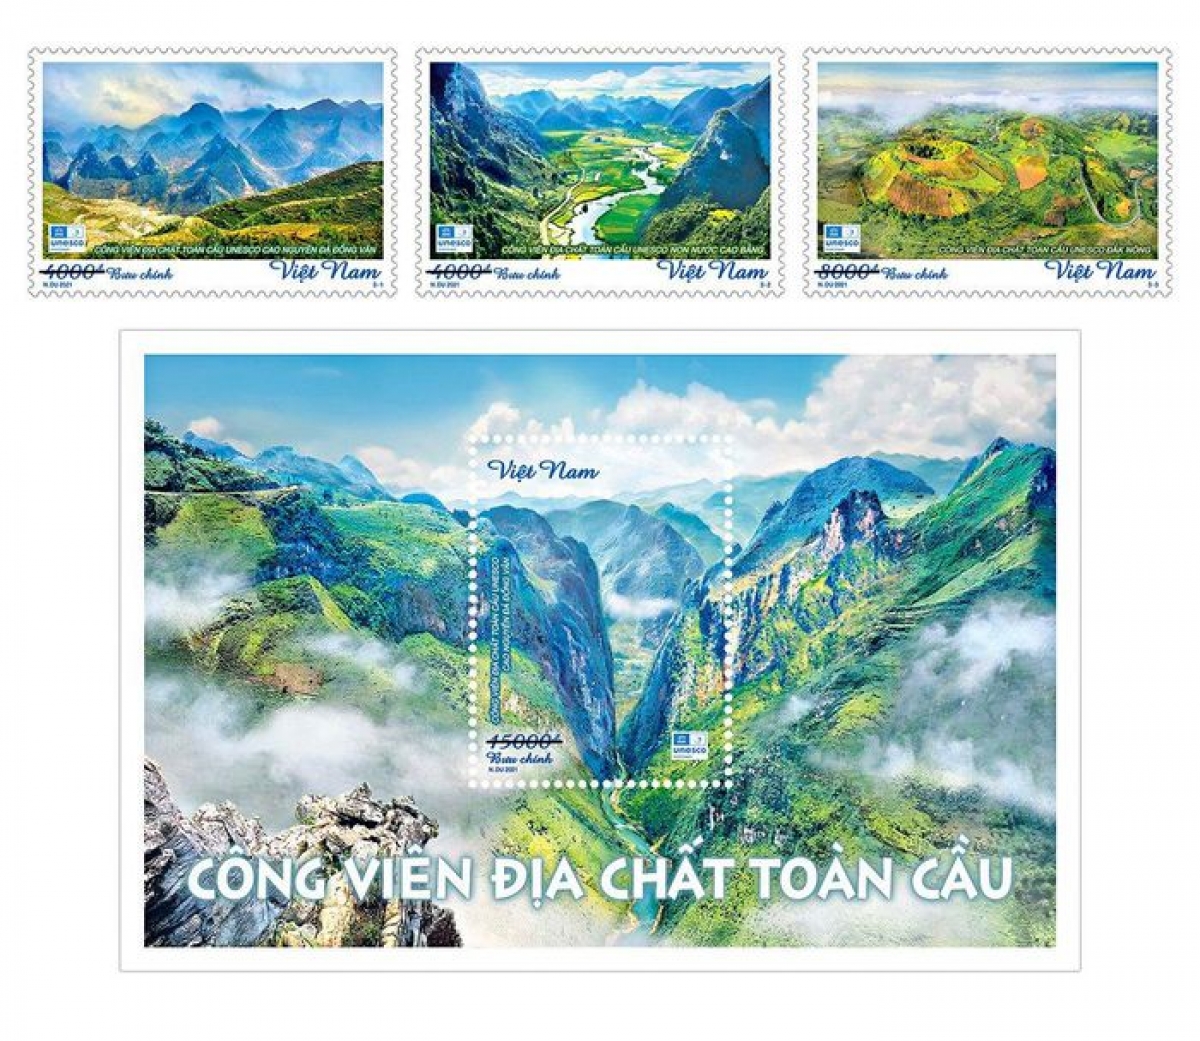 Bộ tem "Công viên địa chất toàn cầu" gồm 3 mẫu tem và 1 blốc
 